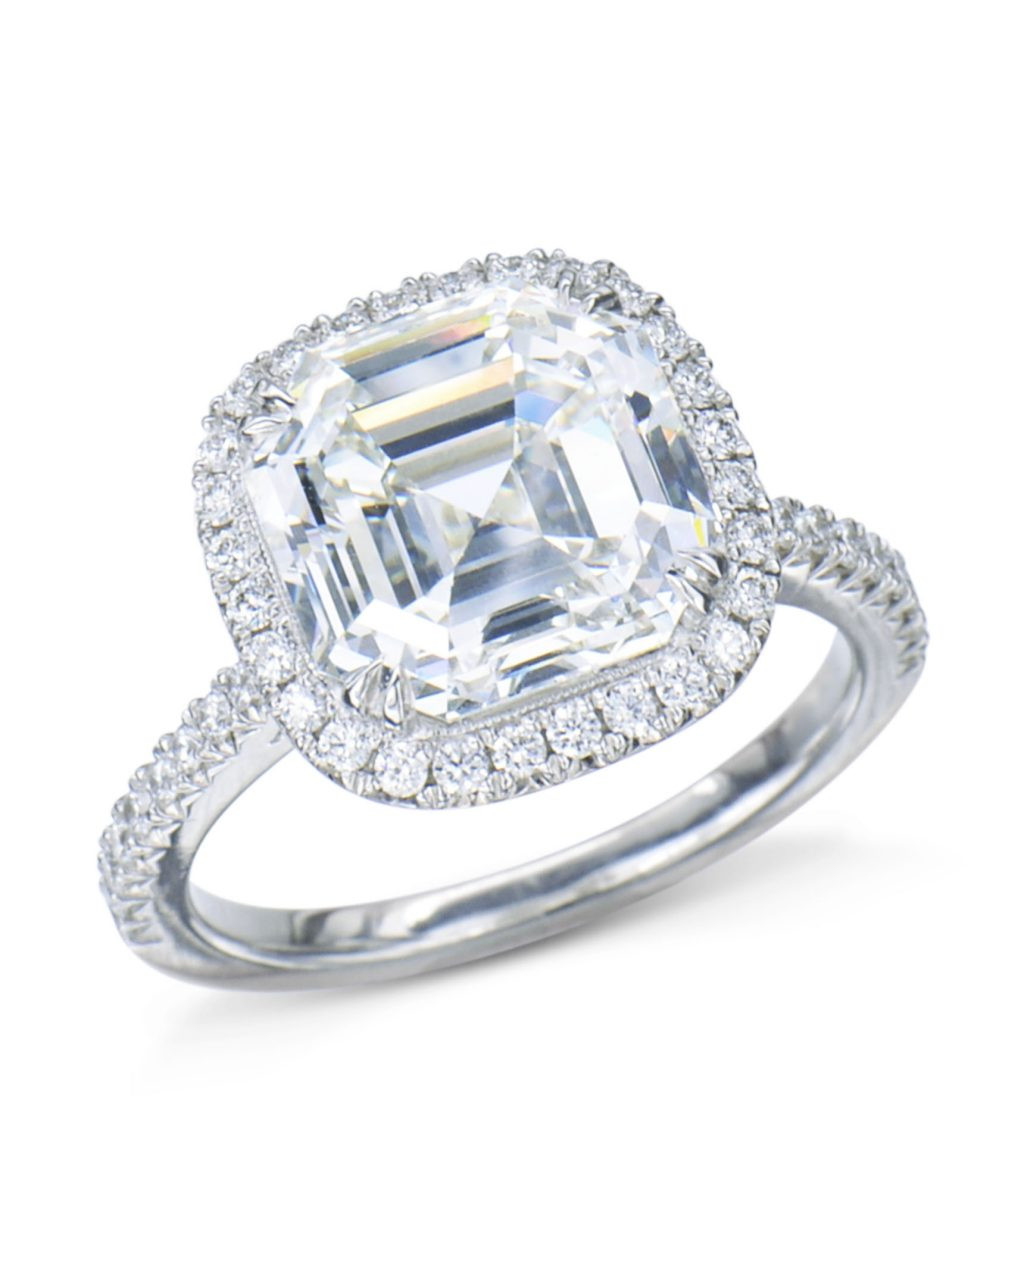 Asscher Cut Diamond Engagement Rings
 Asscher Cut Diamond Halo Engagement Ring Turgeon Raine